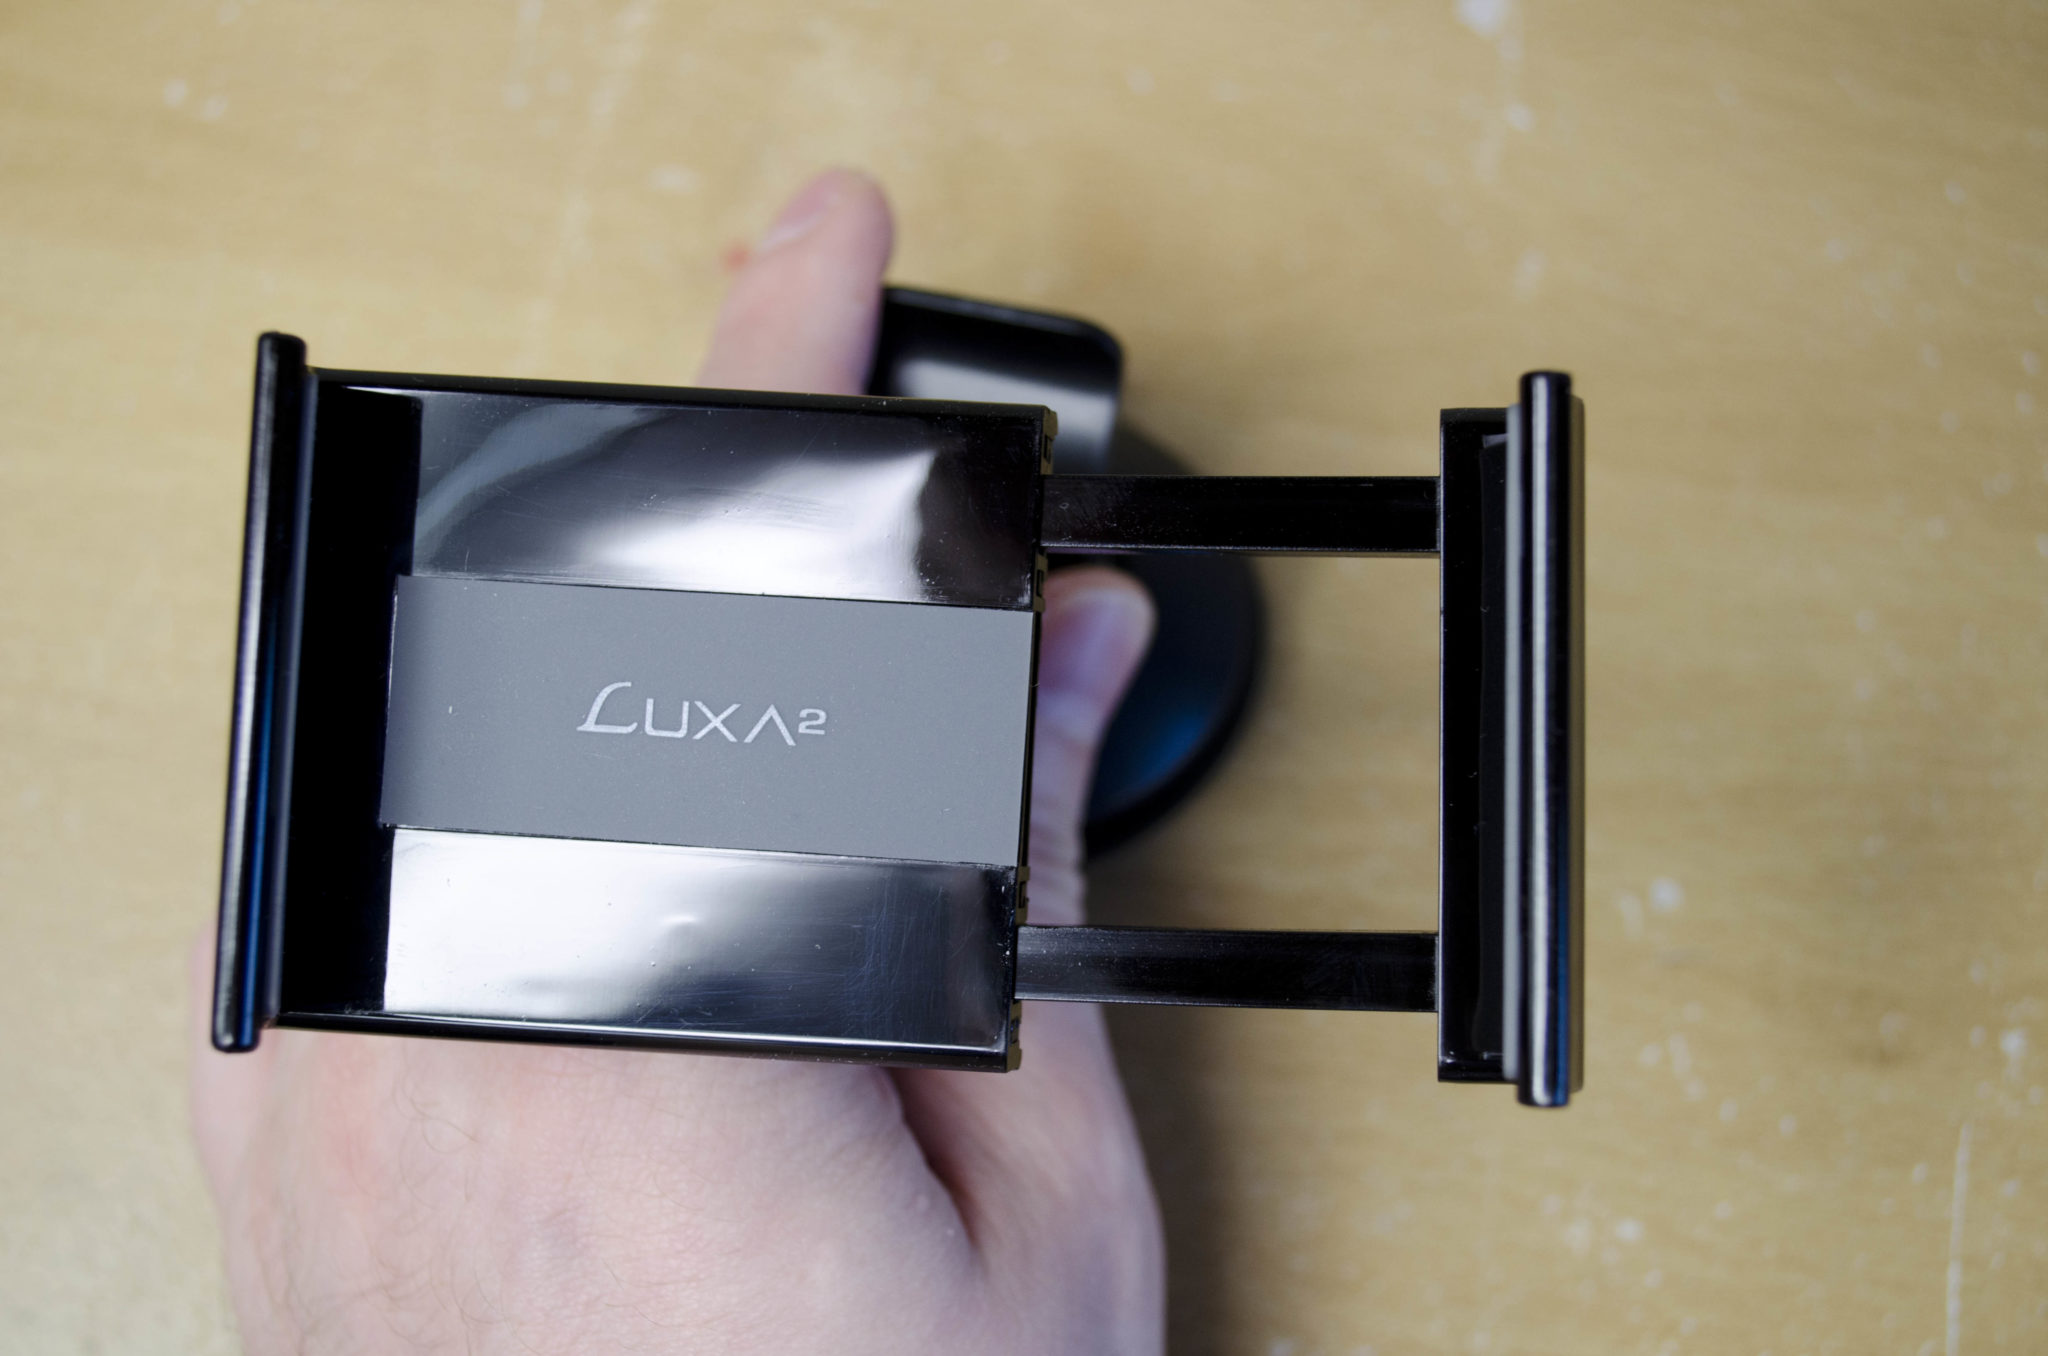 Luxa2 Smart Clip